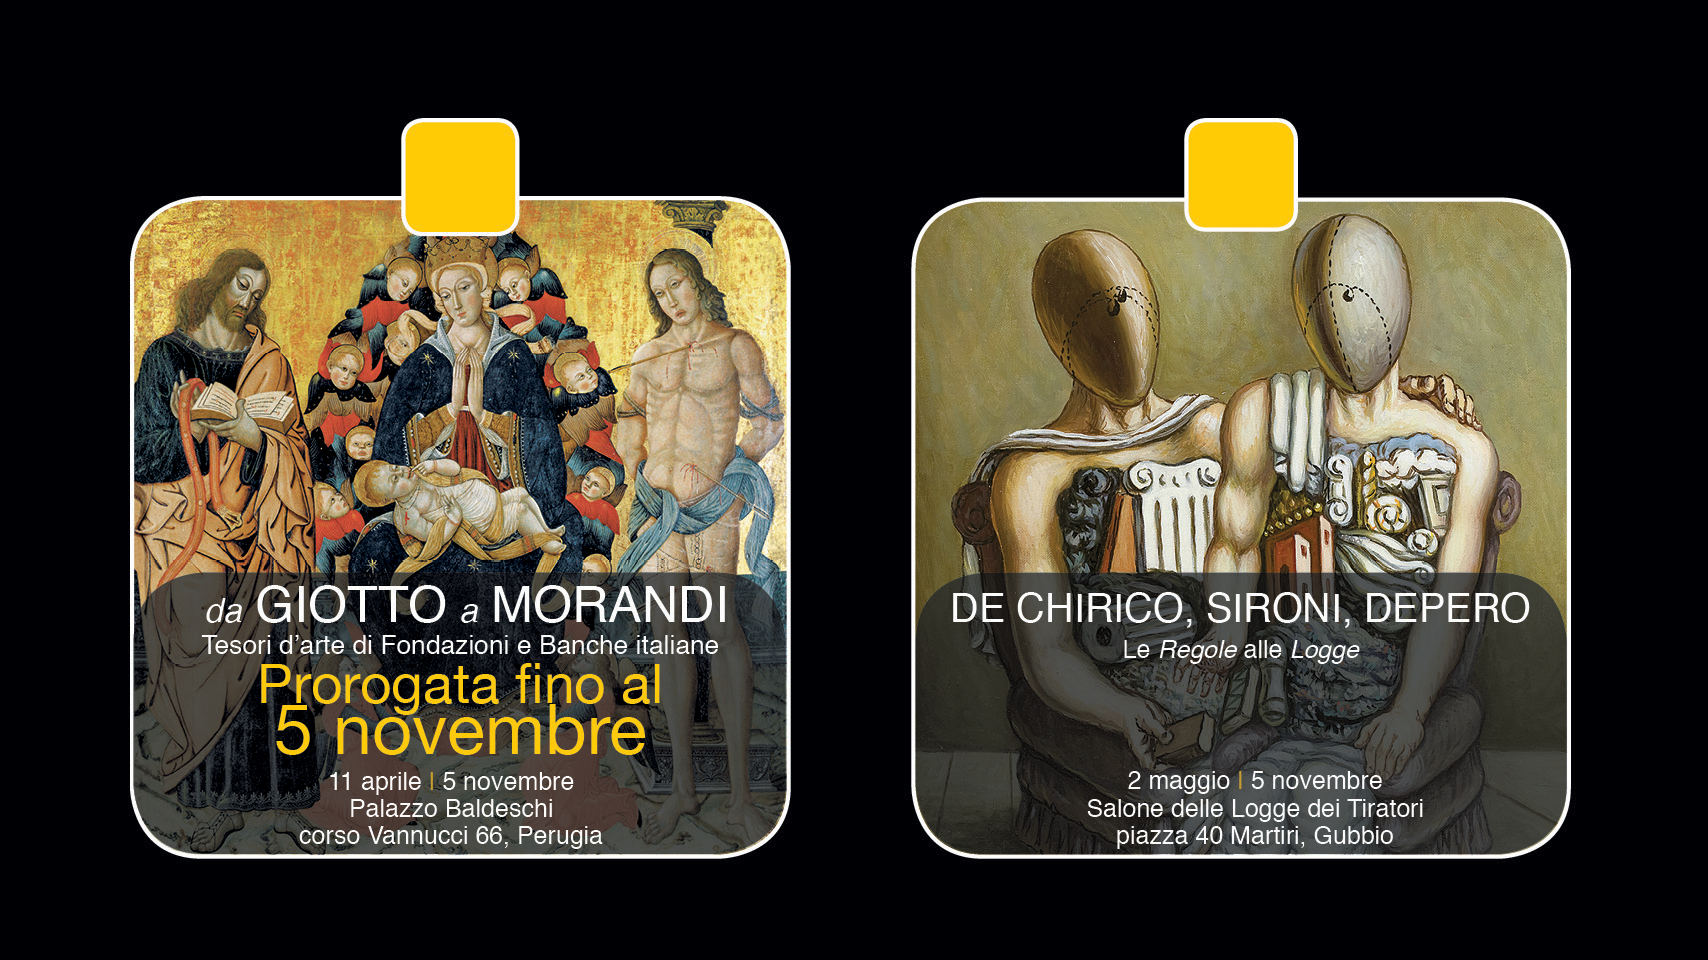 Solo due giorni per “Da Giotto a Morandi” e “De Chirico, Sironi, Depero…”